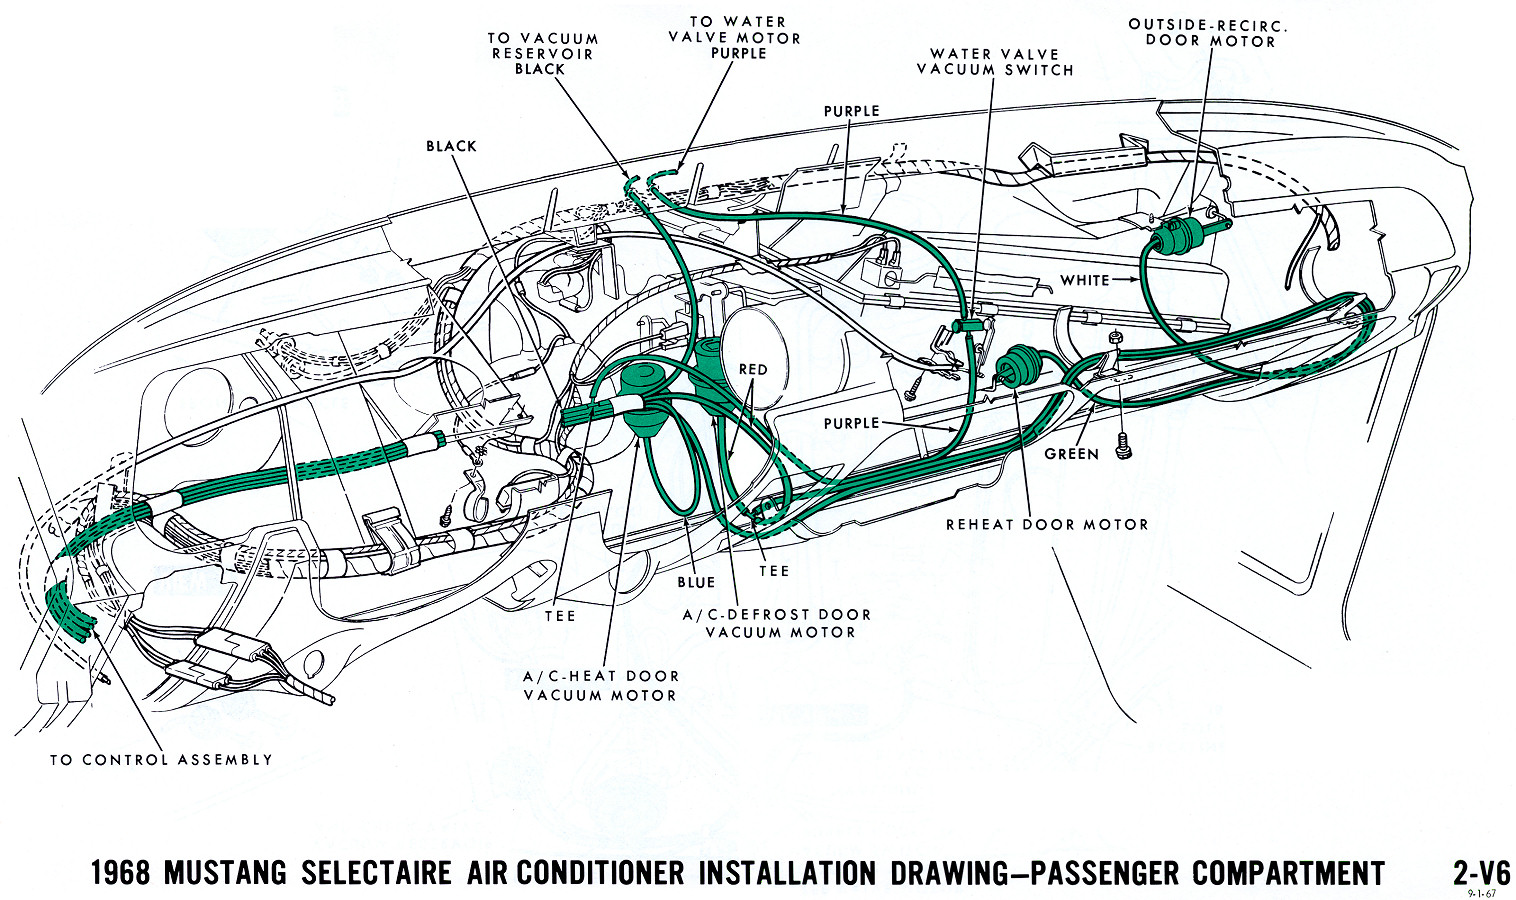 1968 Mustang Vacuum Diagrams.